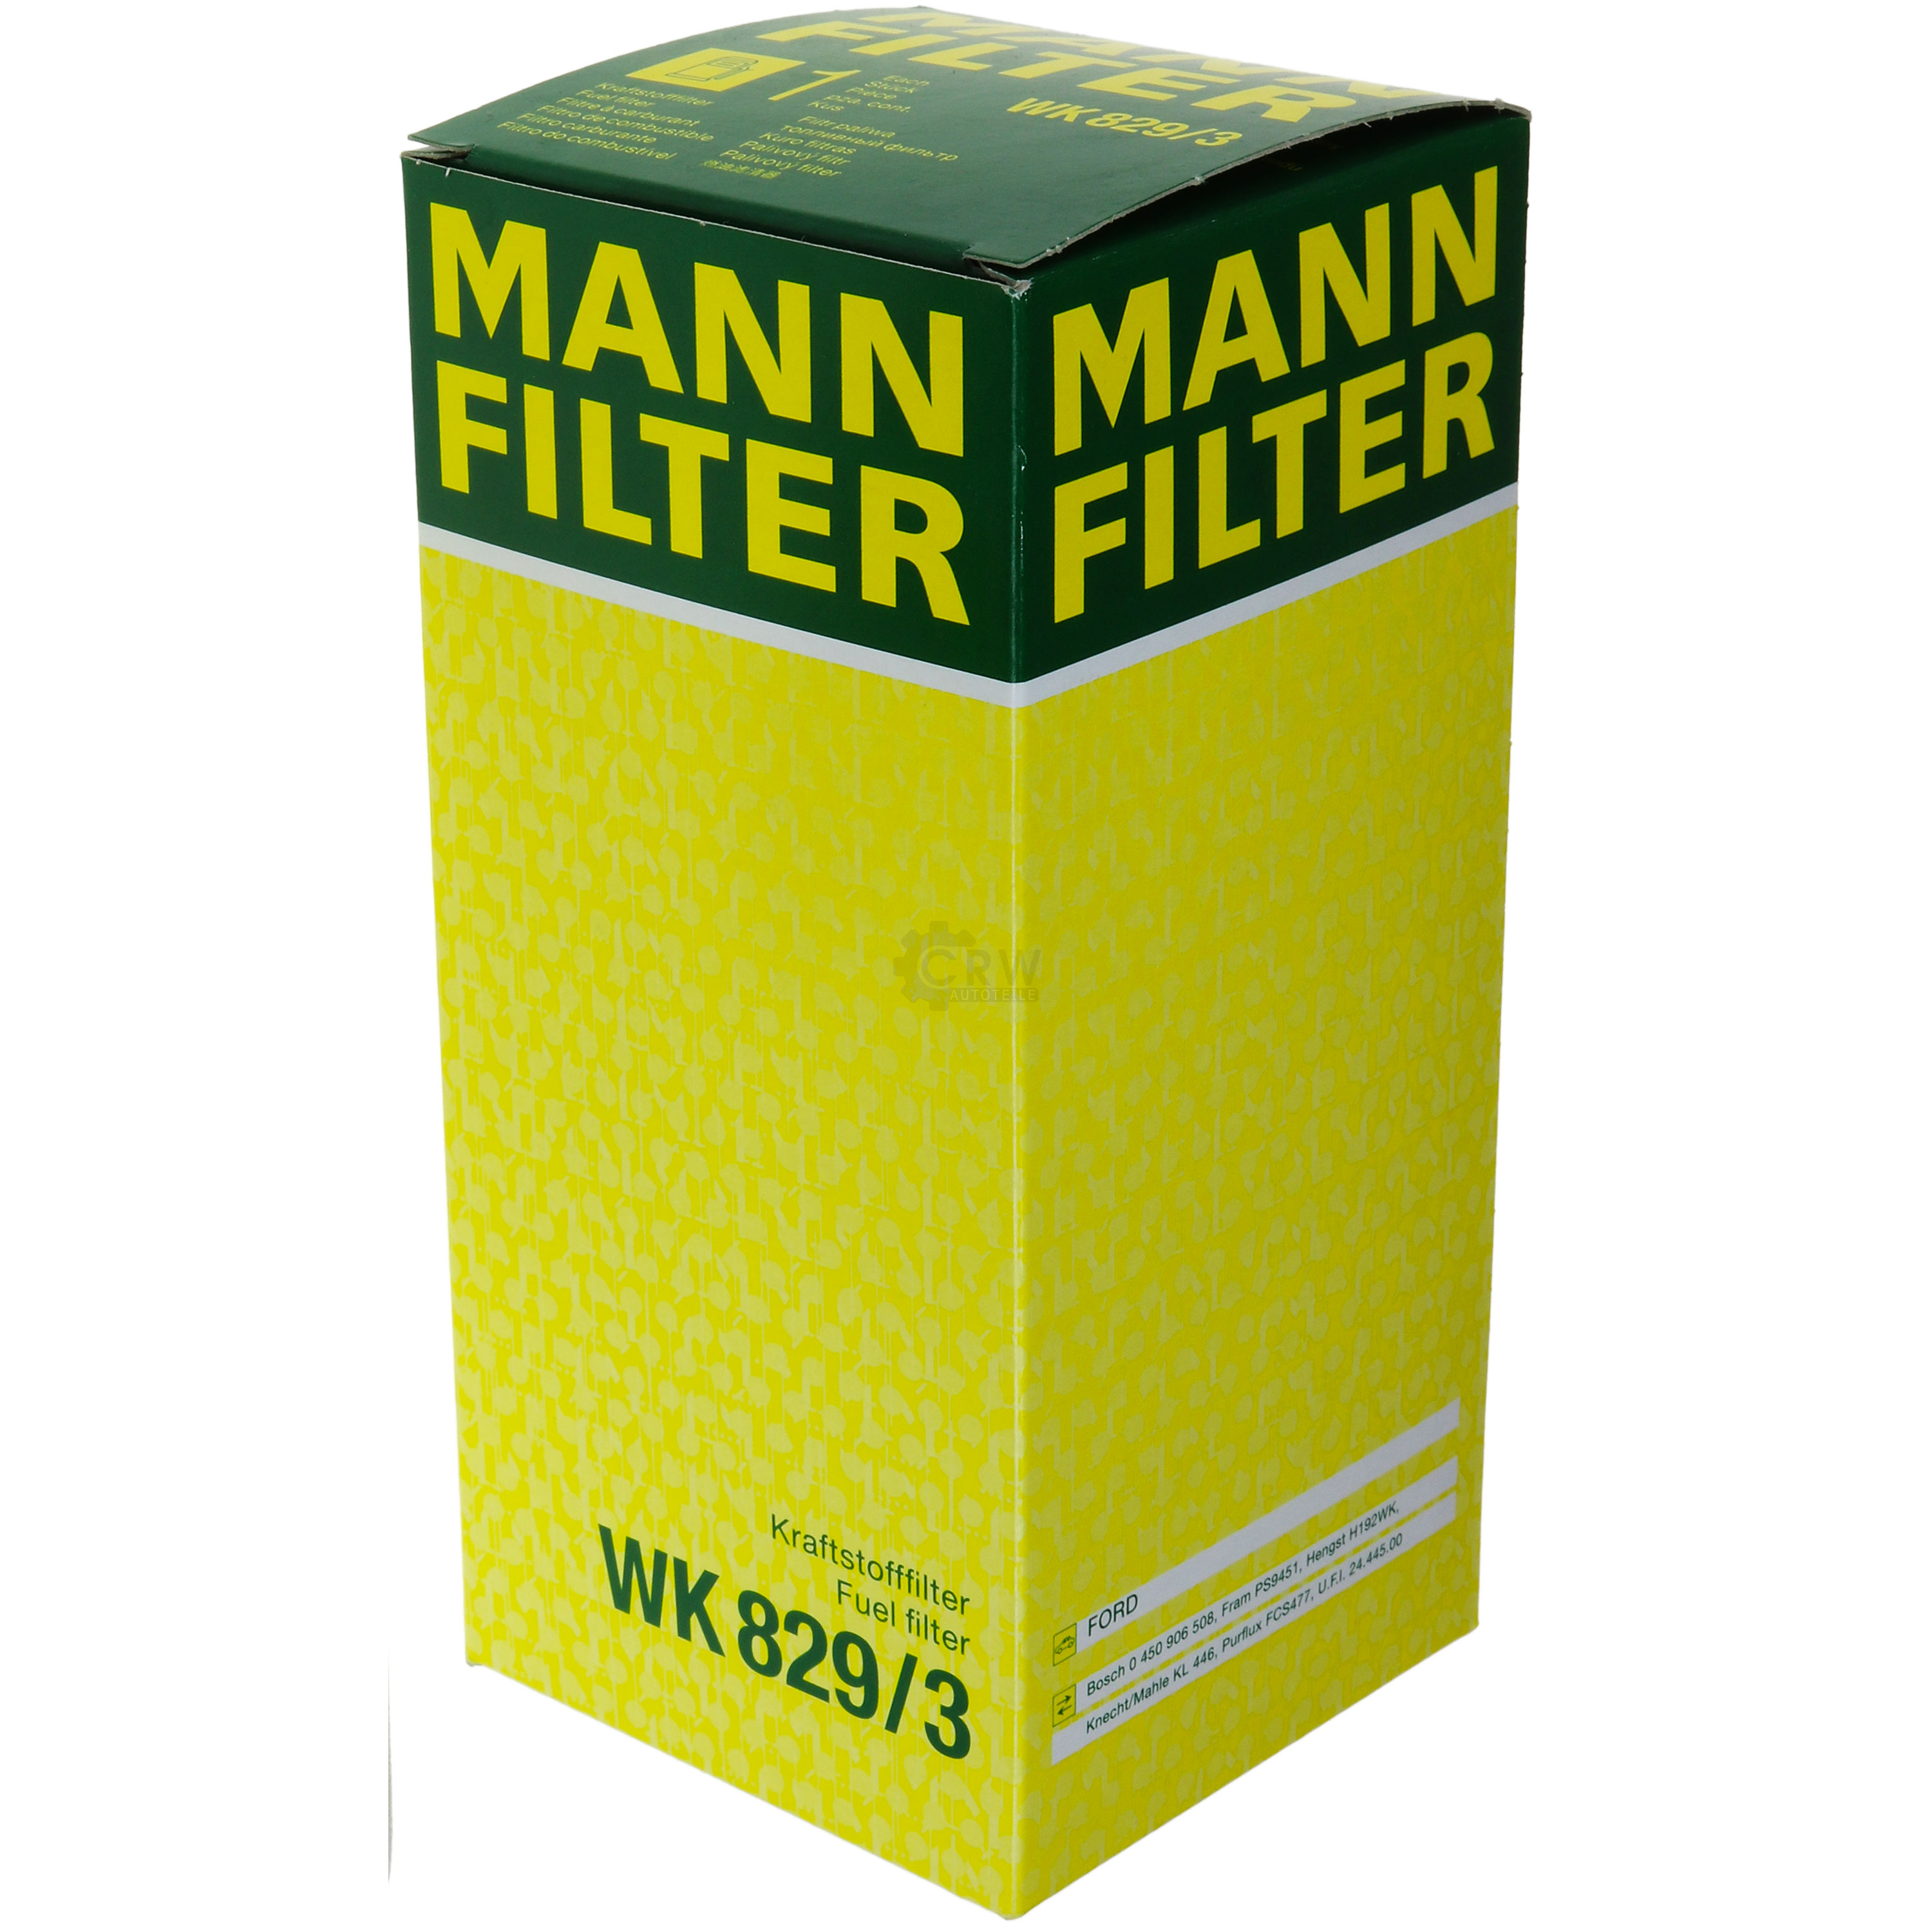 MANN-FILTER Kraftstofffilter WK 829/3 Fuel Filter